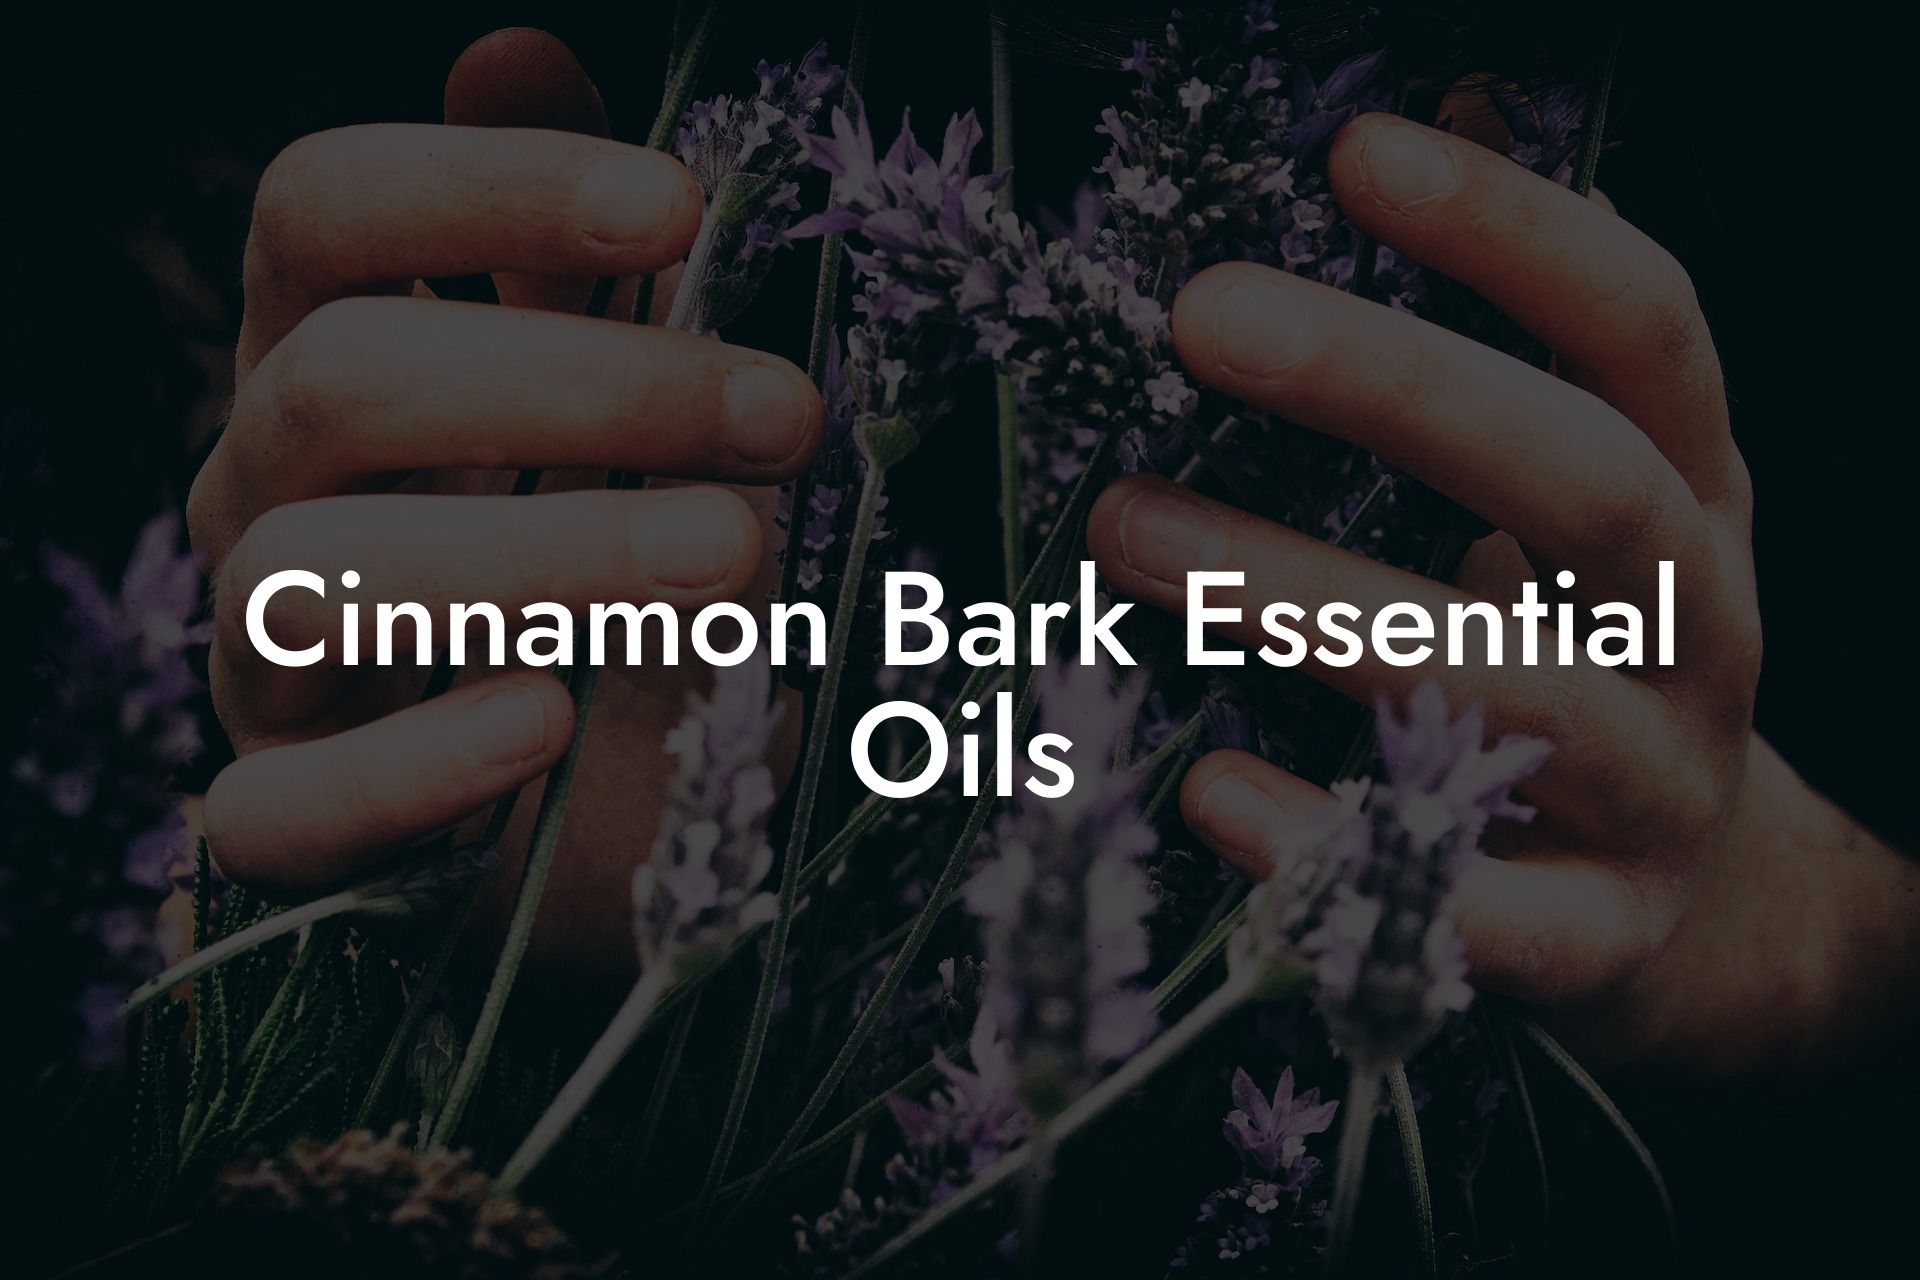 Cinnamon Bark Essential Oils